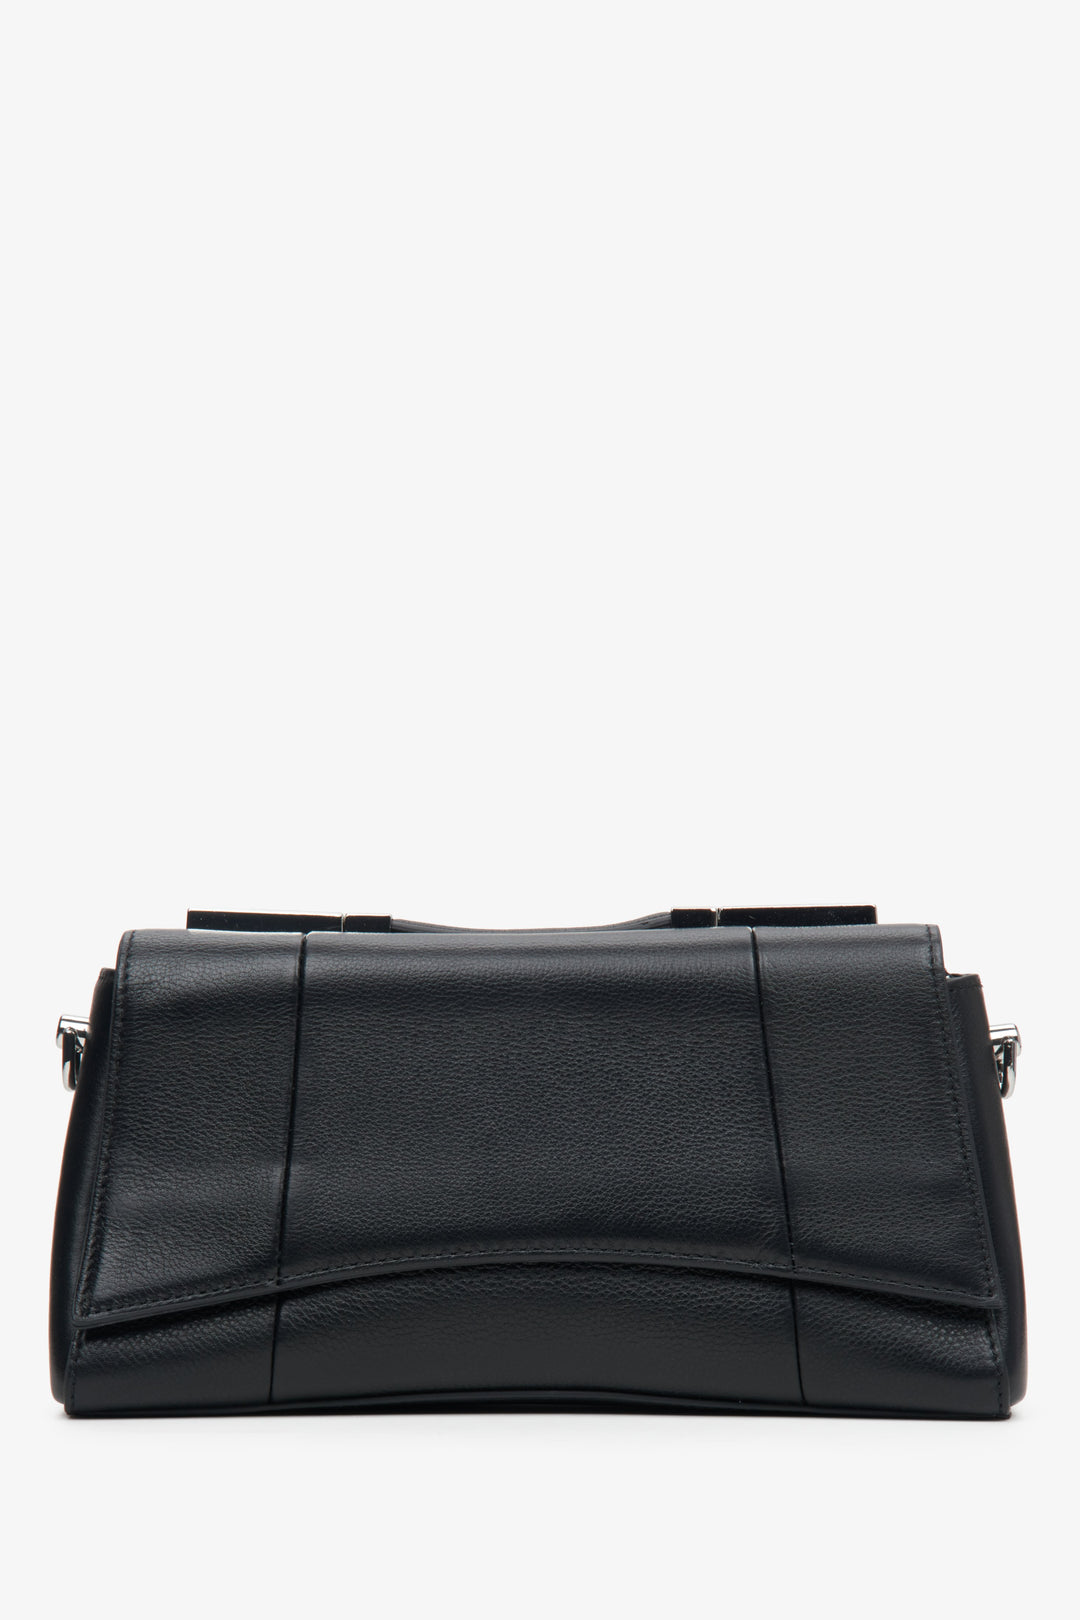 Women's Black Shoulder Bag made of Genuine Leather Estro ER00113775.